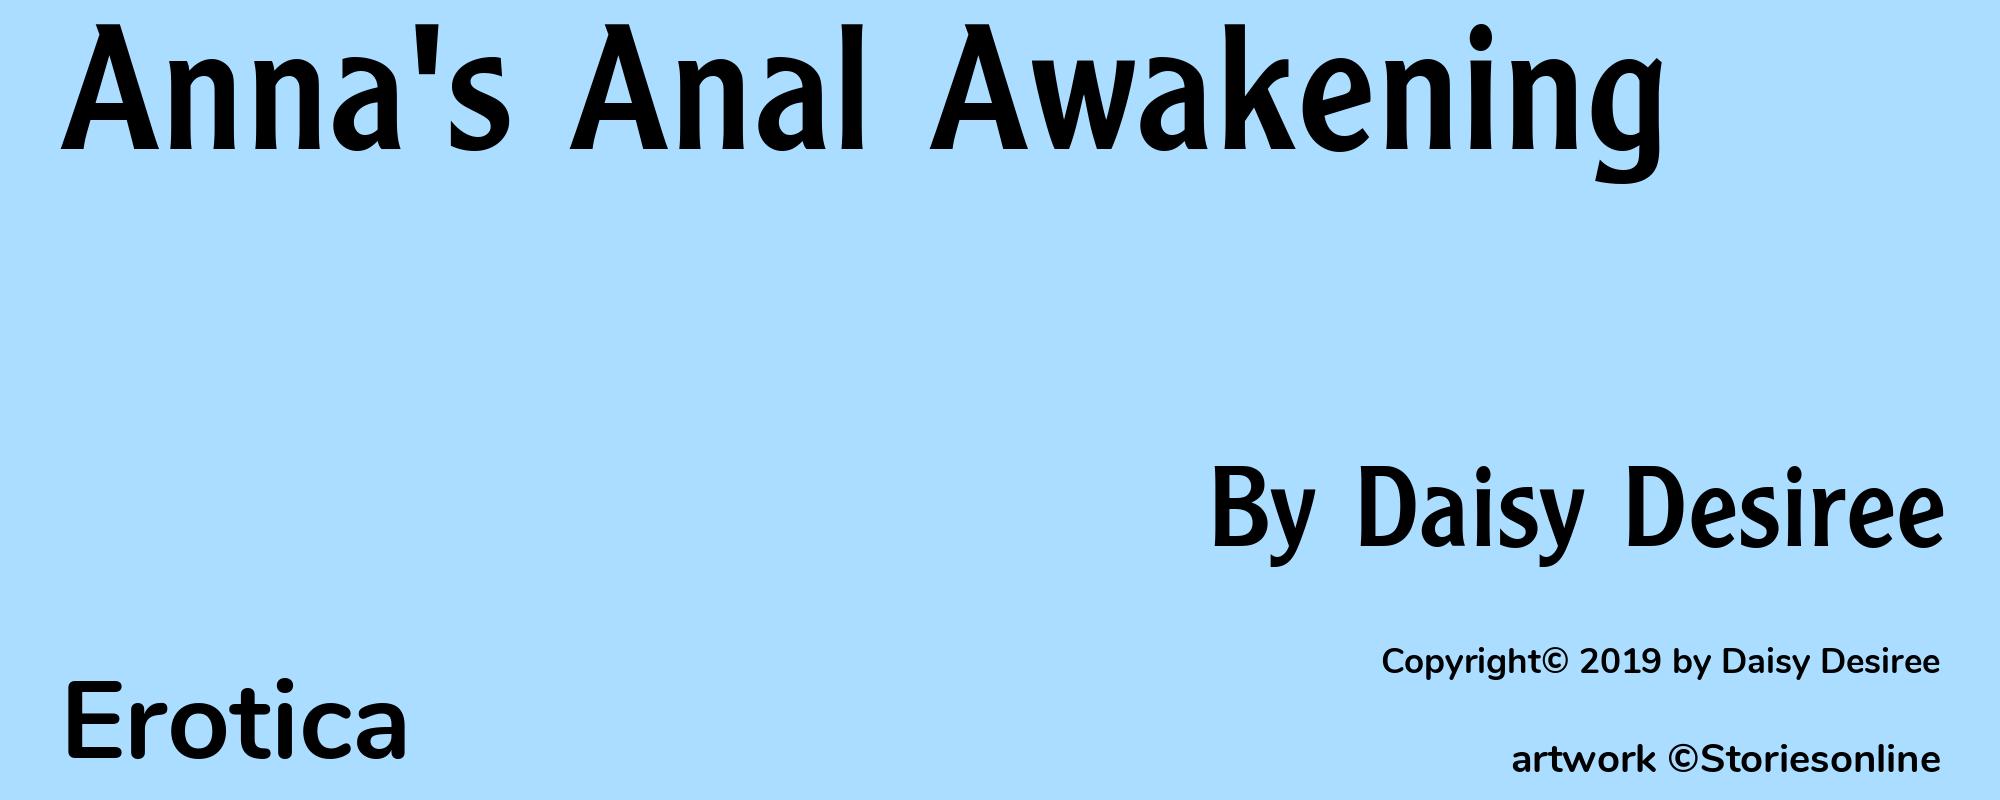 Anna's Anal Awakening - Cover